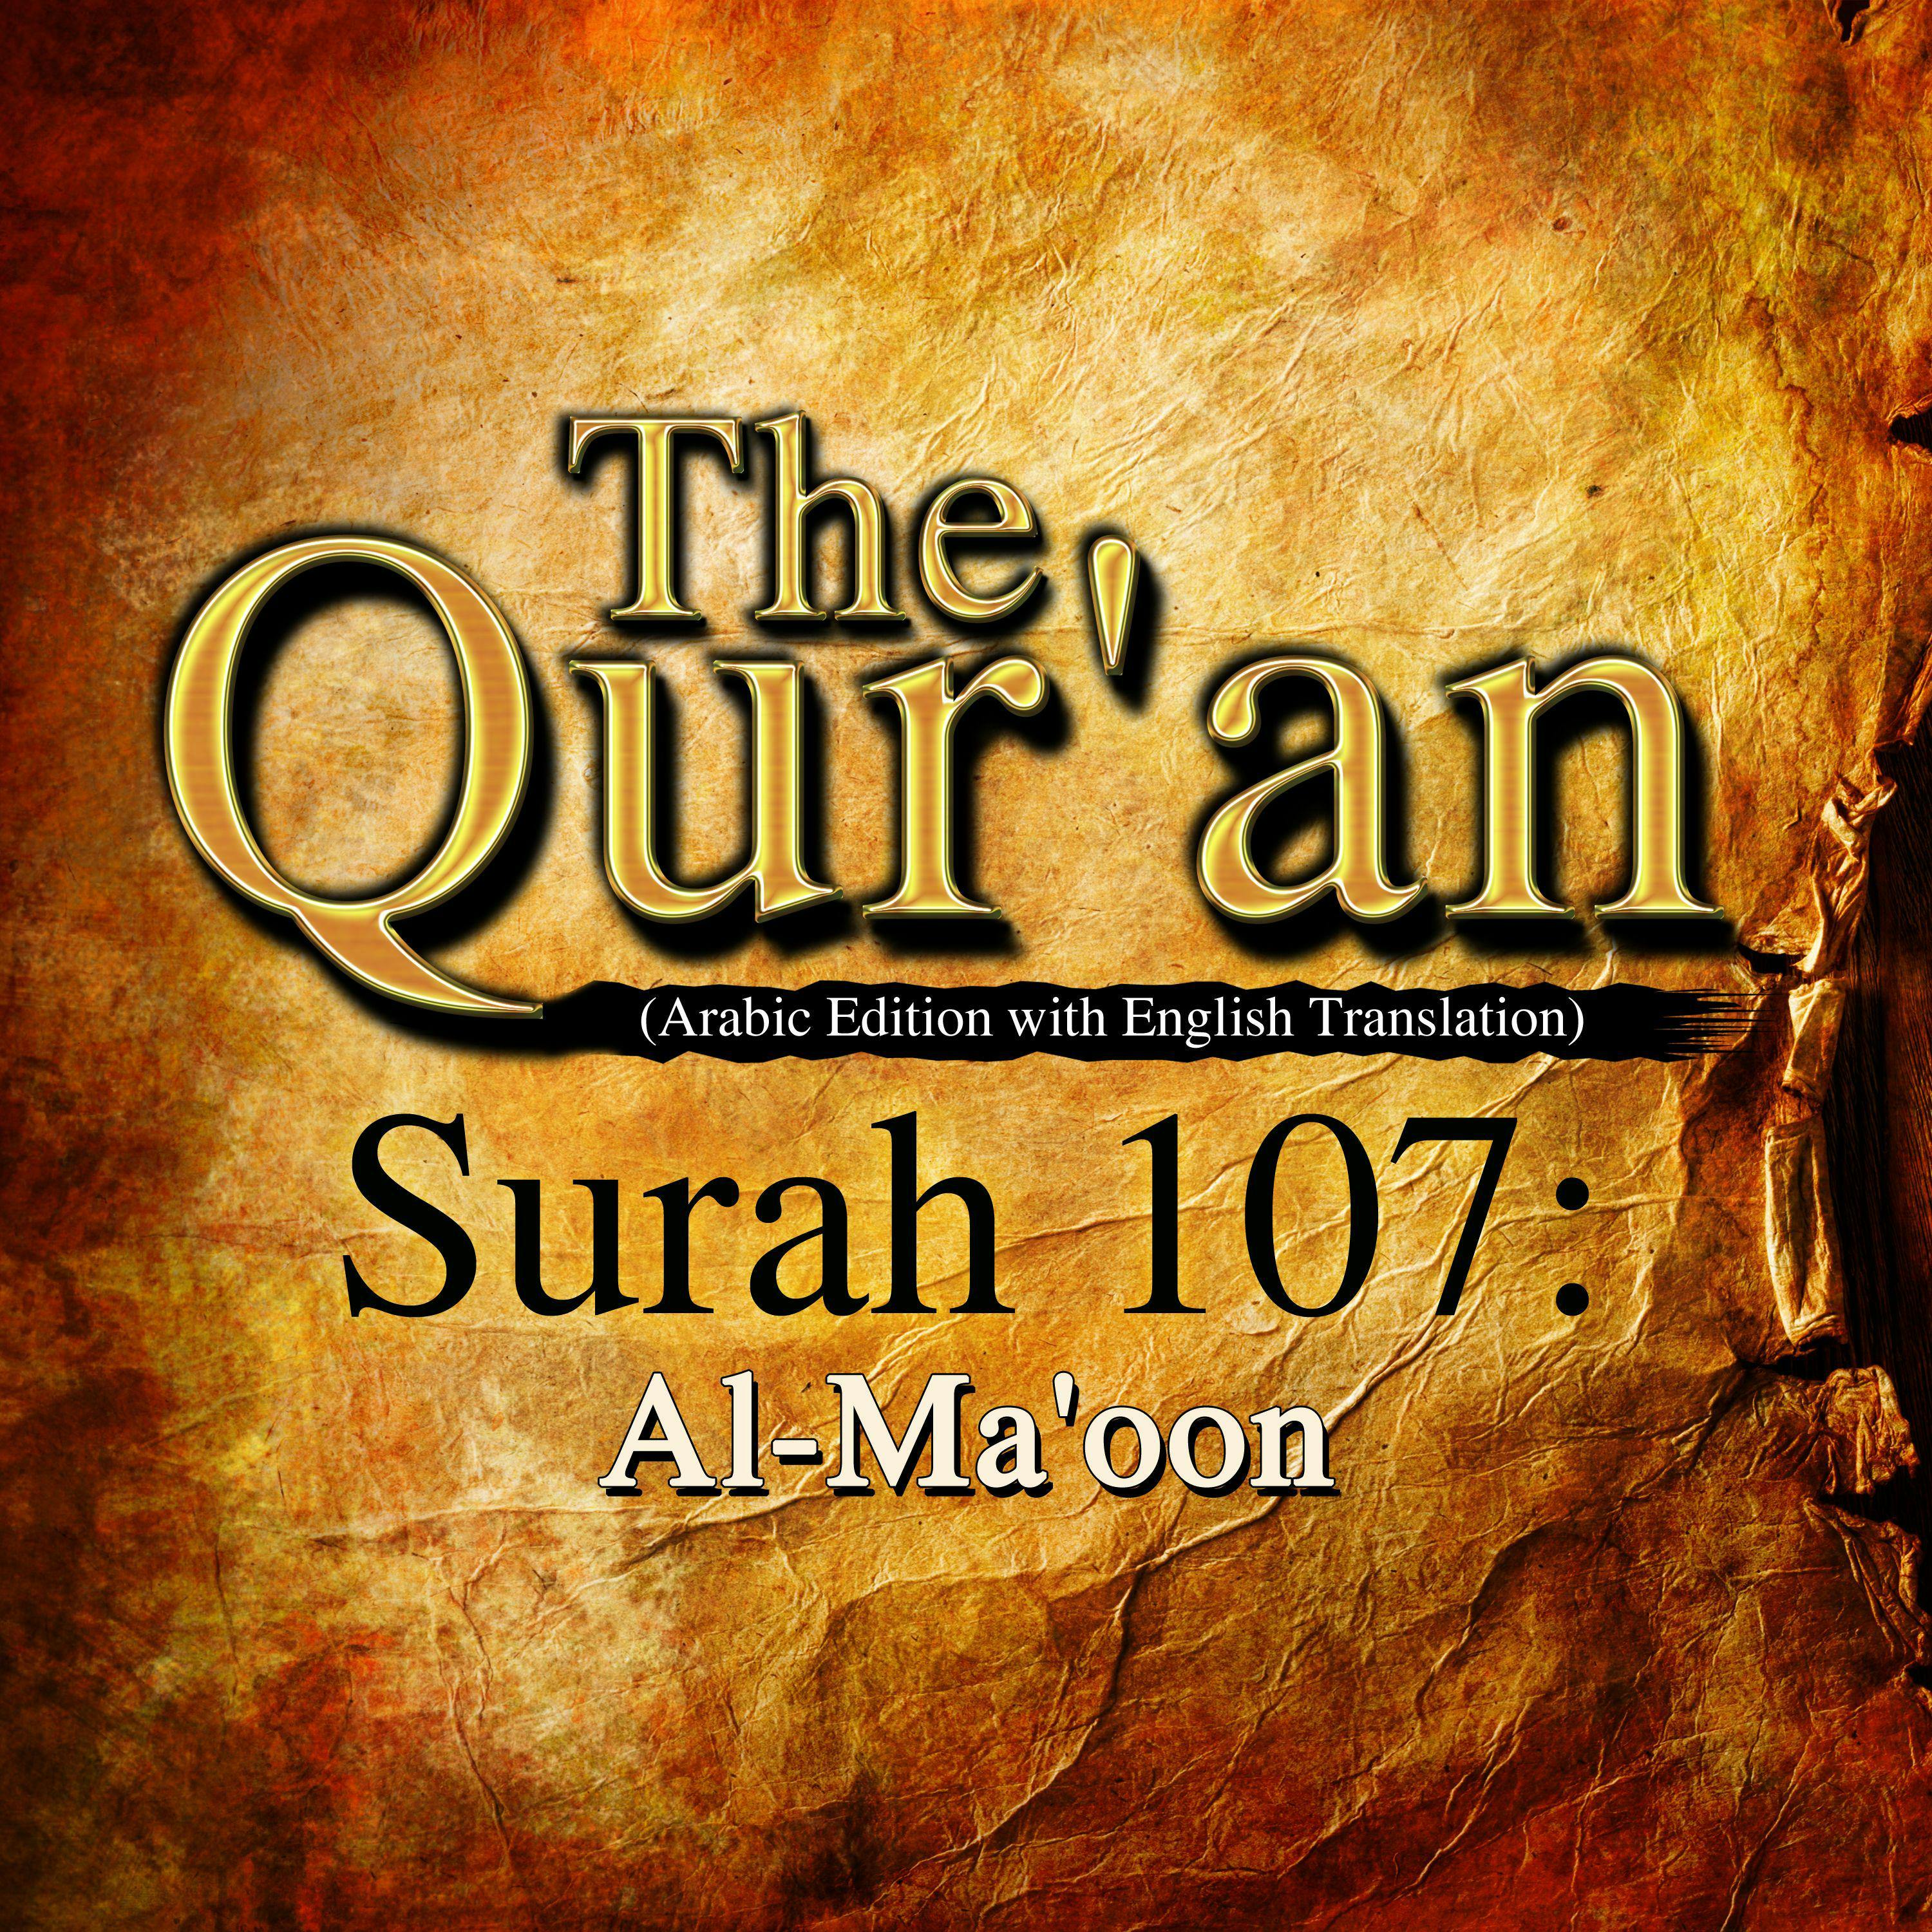 The Qur'an: Surah 107: Al-Ma'oon - One Media iP LTD